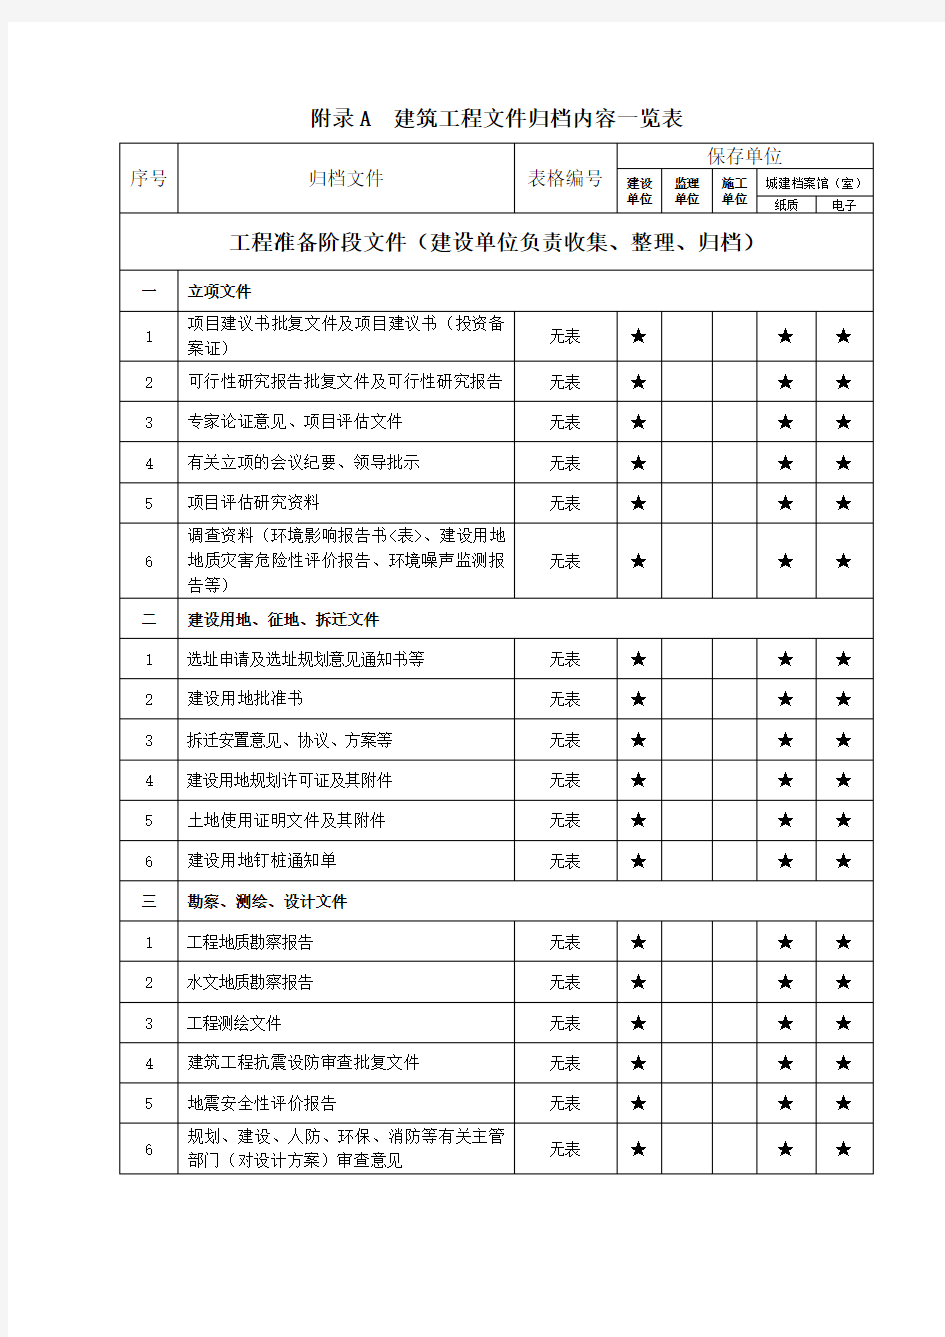 2018年重庆建筑工程文件归档内容一览表